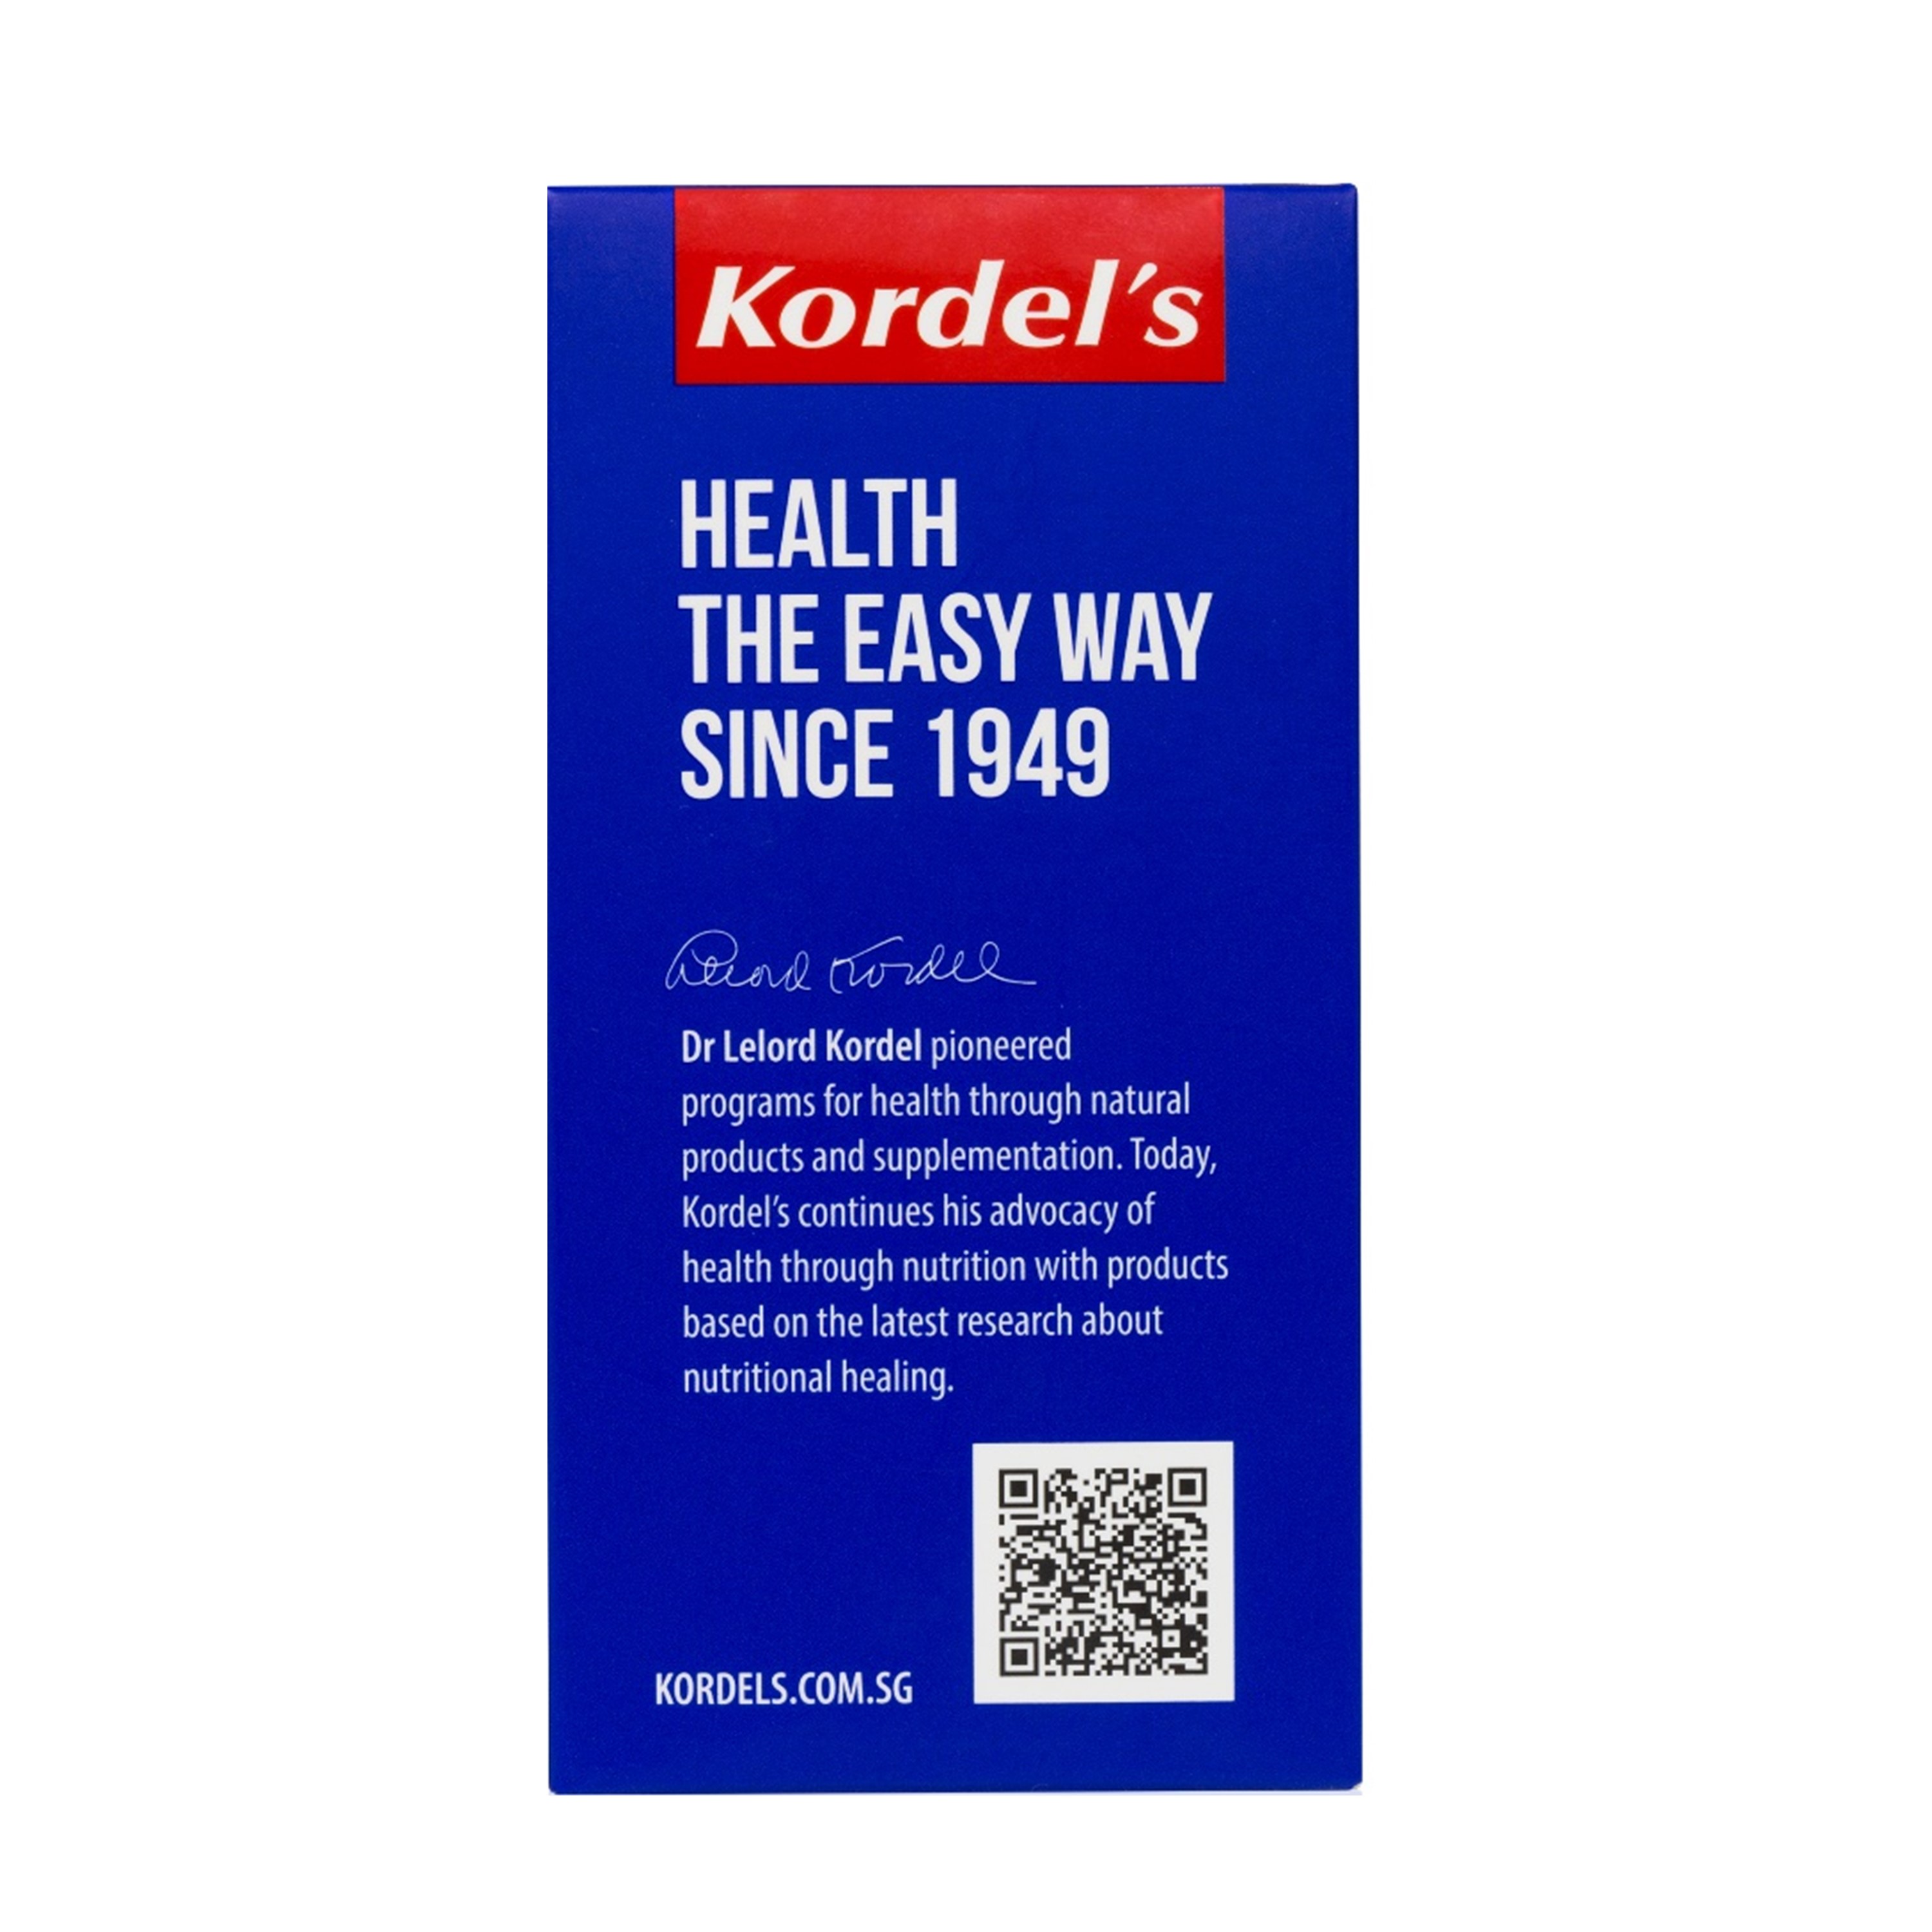 Kordel's Kaneka Ubiquinol™ Active CoQ10 100 mg 30 Softgels